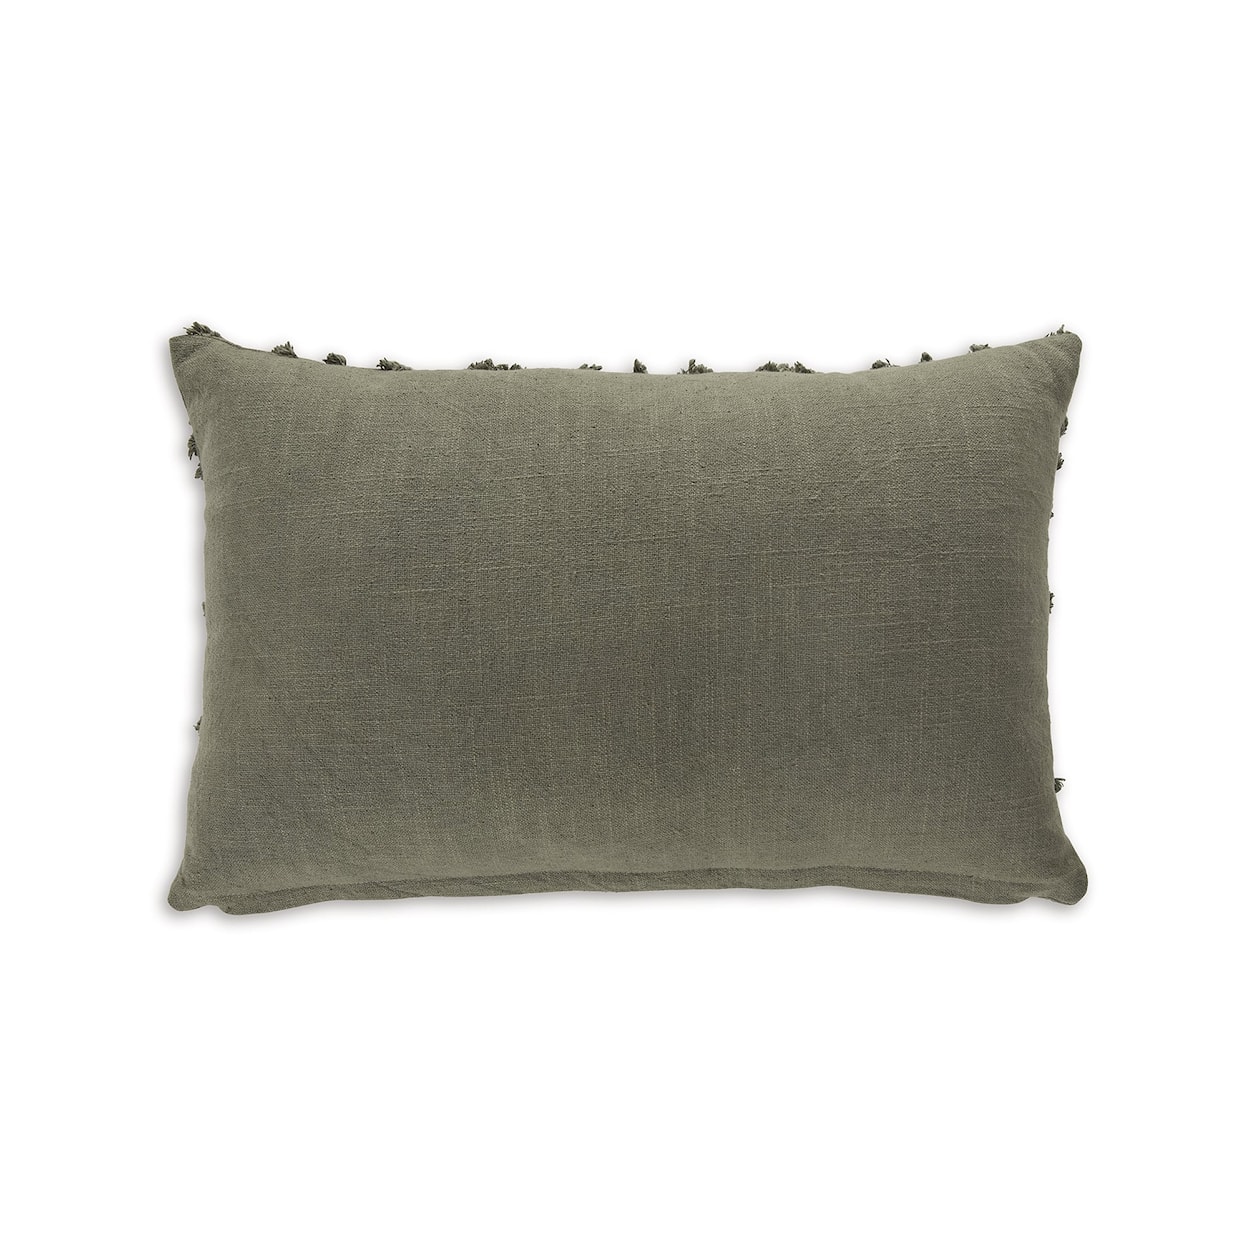 Benchcraft Finnbrook Pillow (Set of 4)